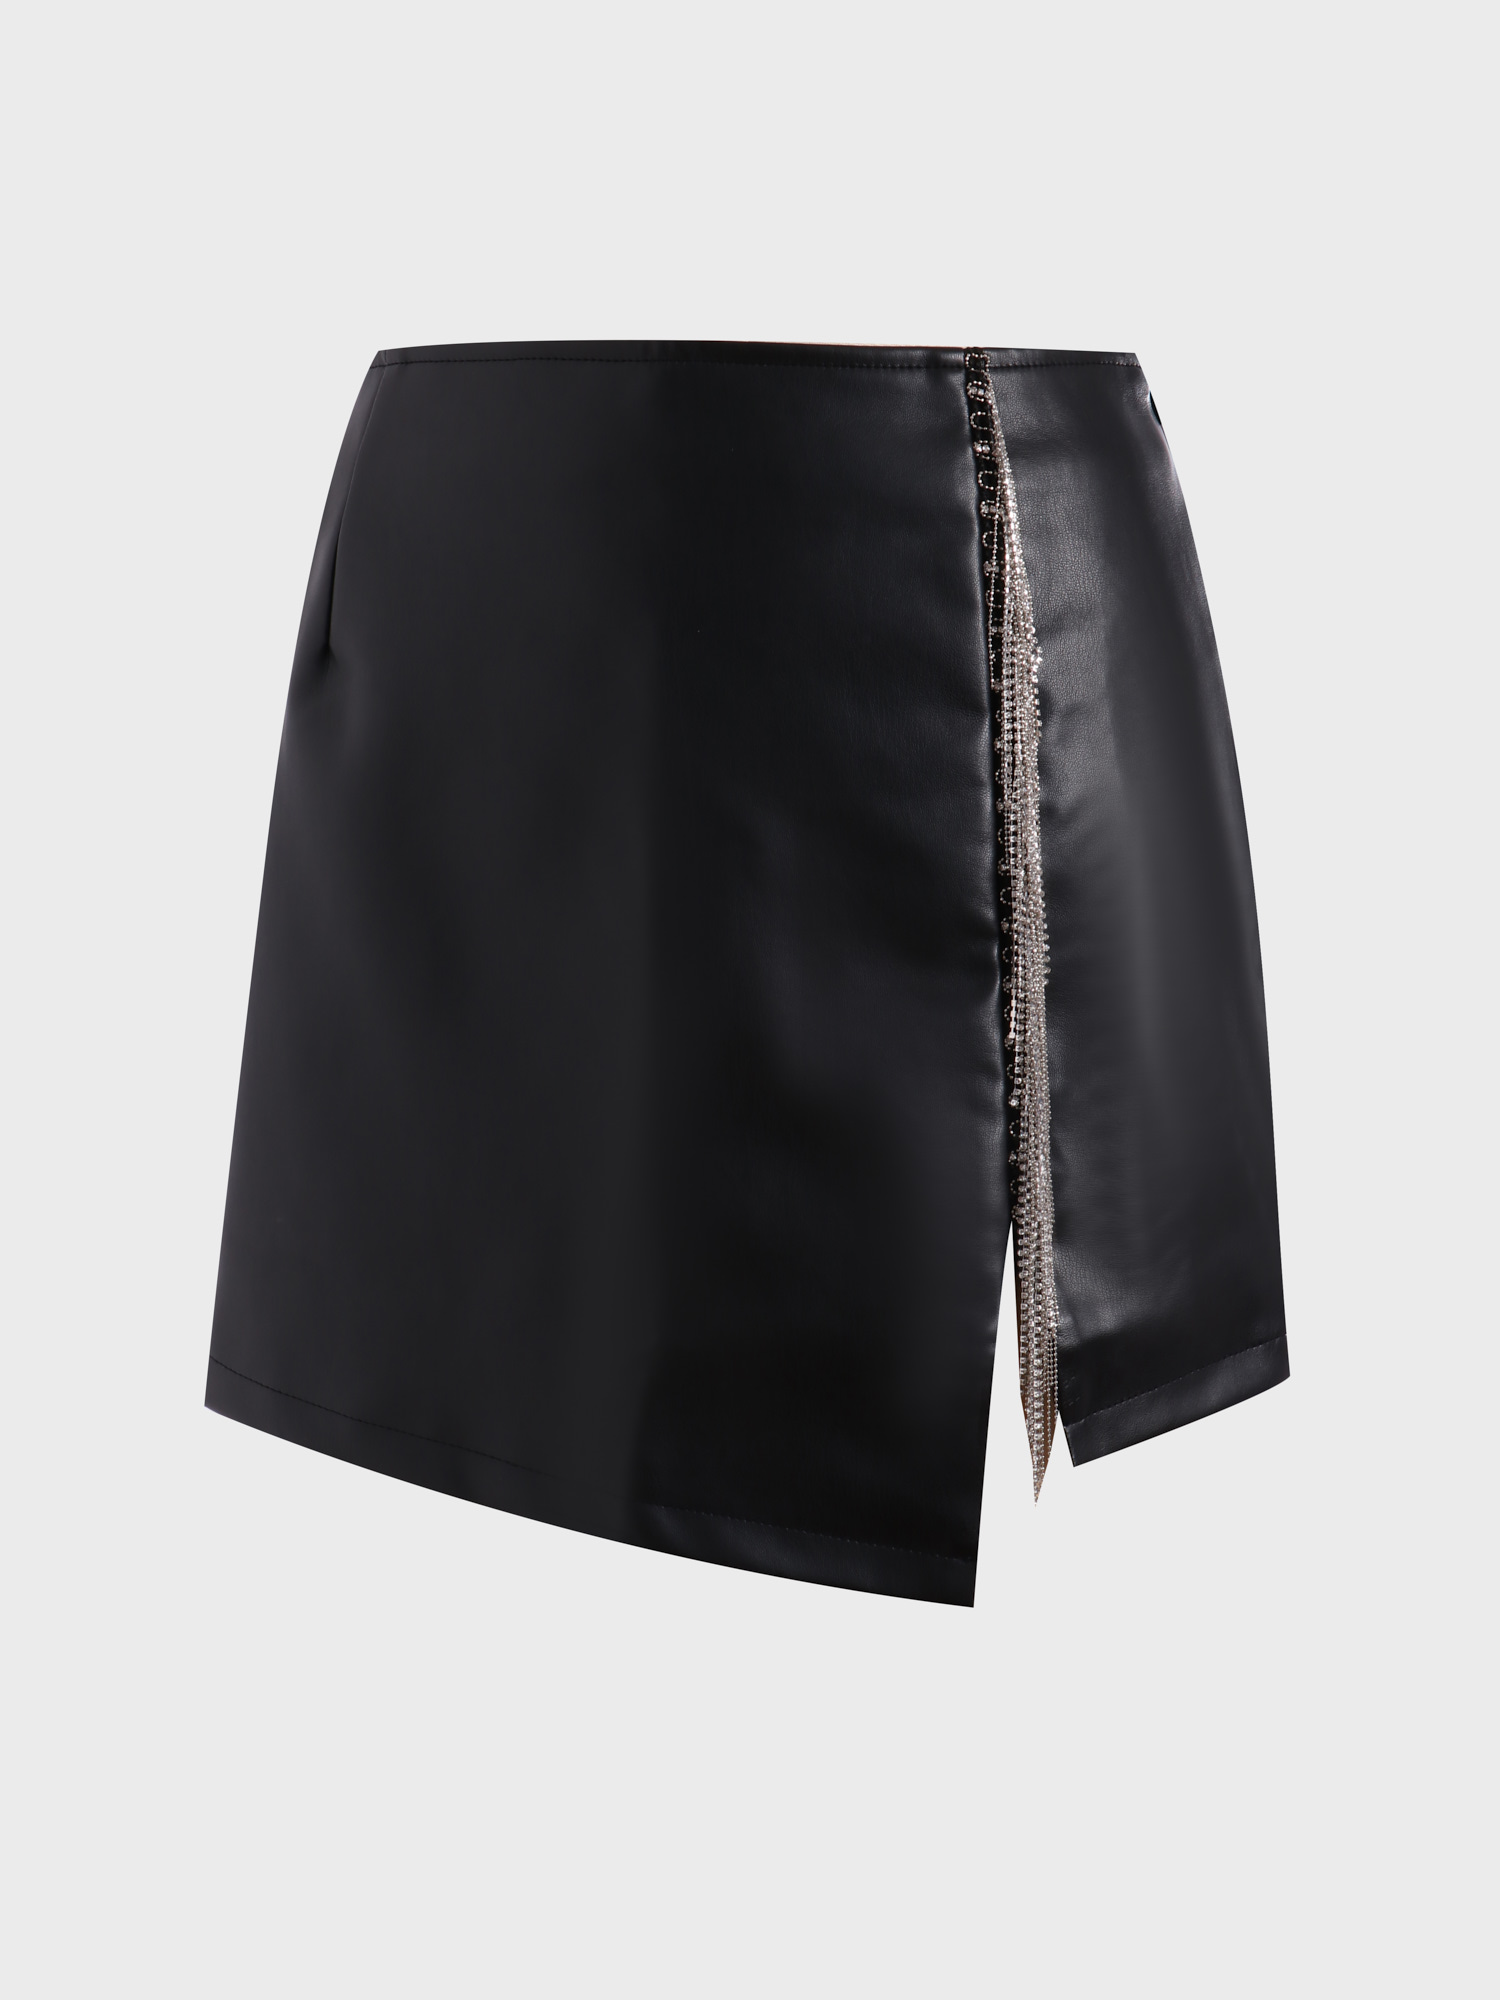 Black Midsize Fringe Stretch Leather Skirt with Side Split | Hemwave - Midsize Fashion